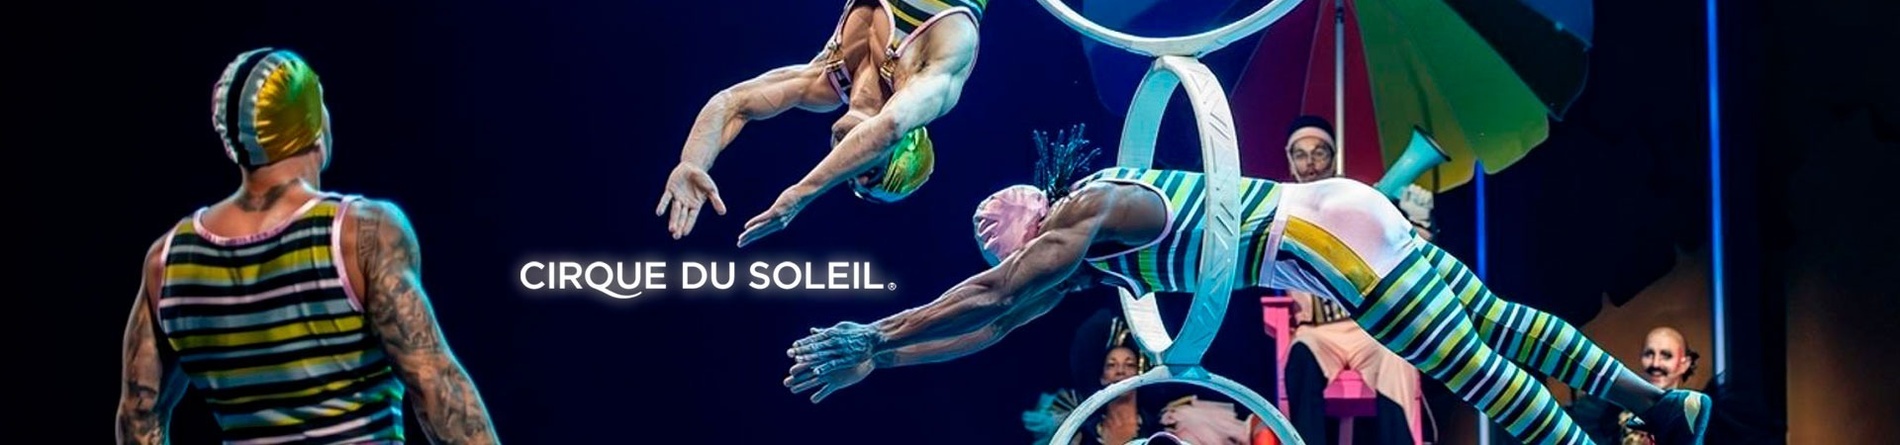 une affiche du cirque du soleil avec des acrobates sur scène